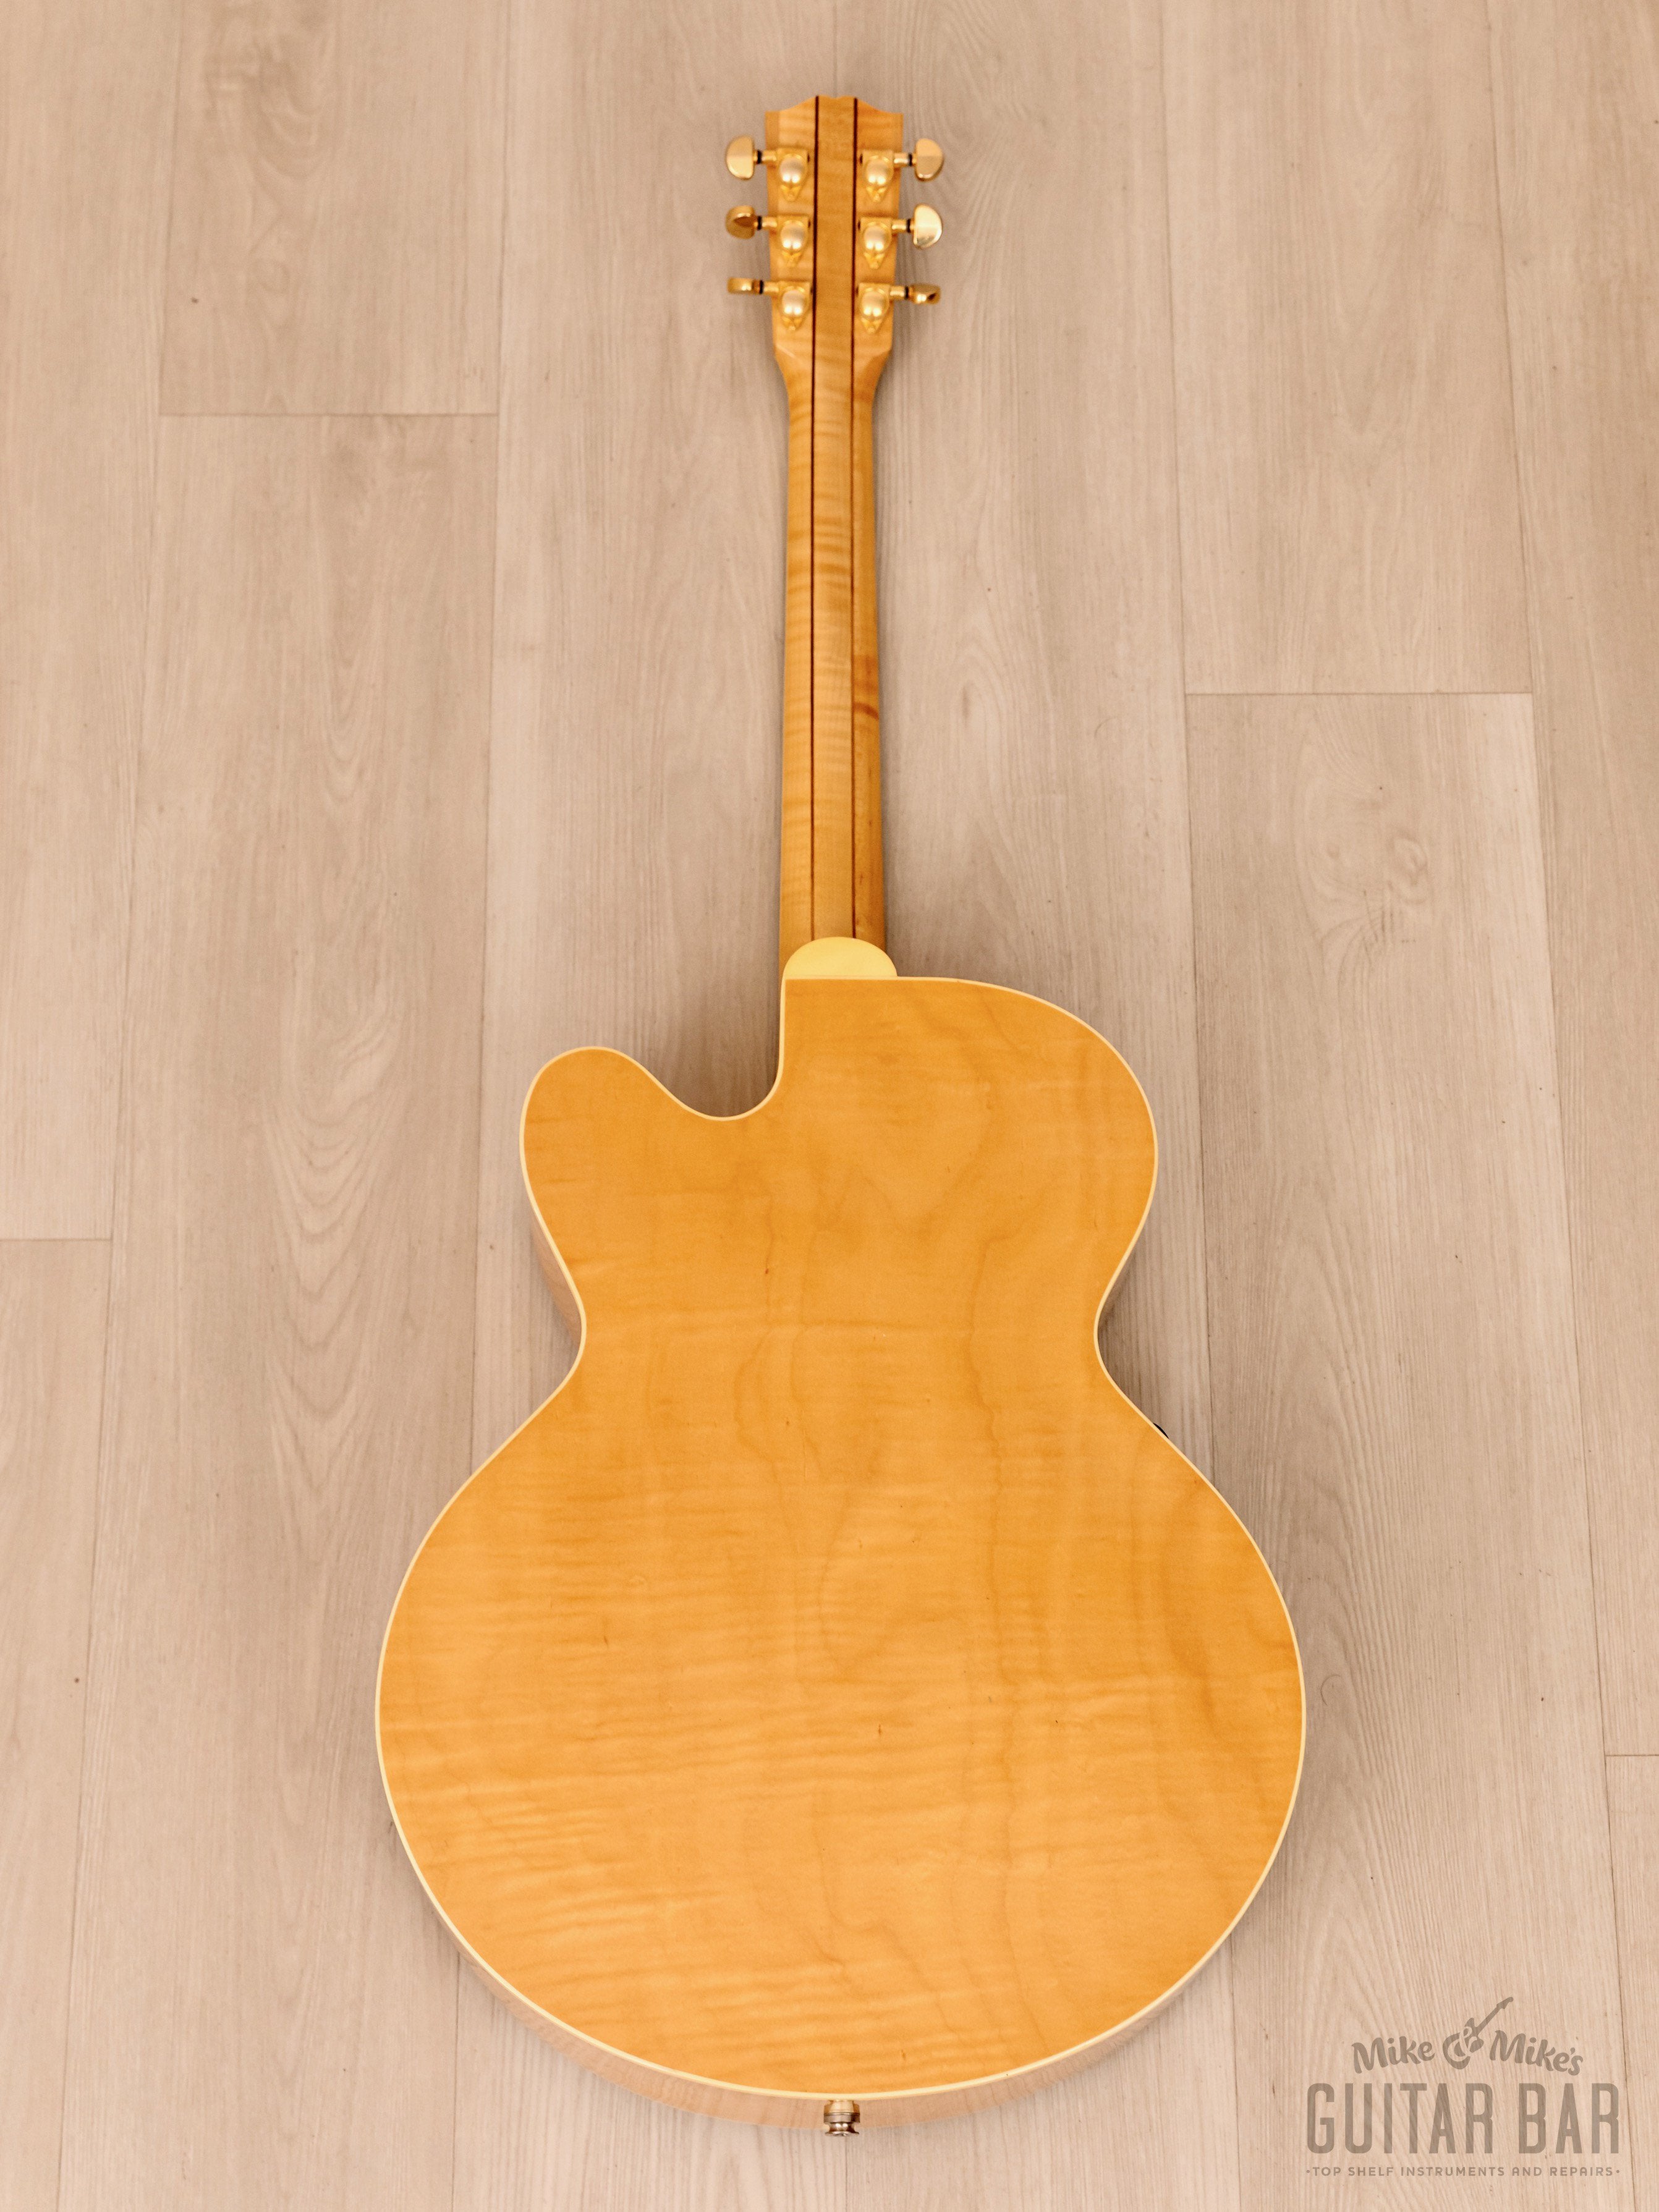 2001 Gibson J-185 EC Blonde Flame Maple Back/Sides, Near-Mint w/ Fishman Prefix, Case